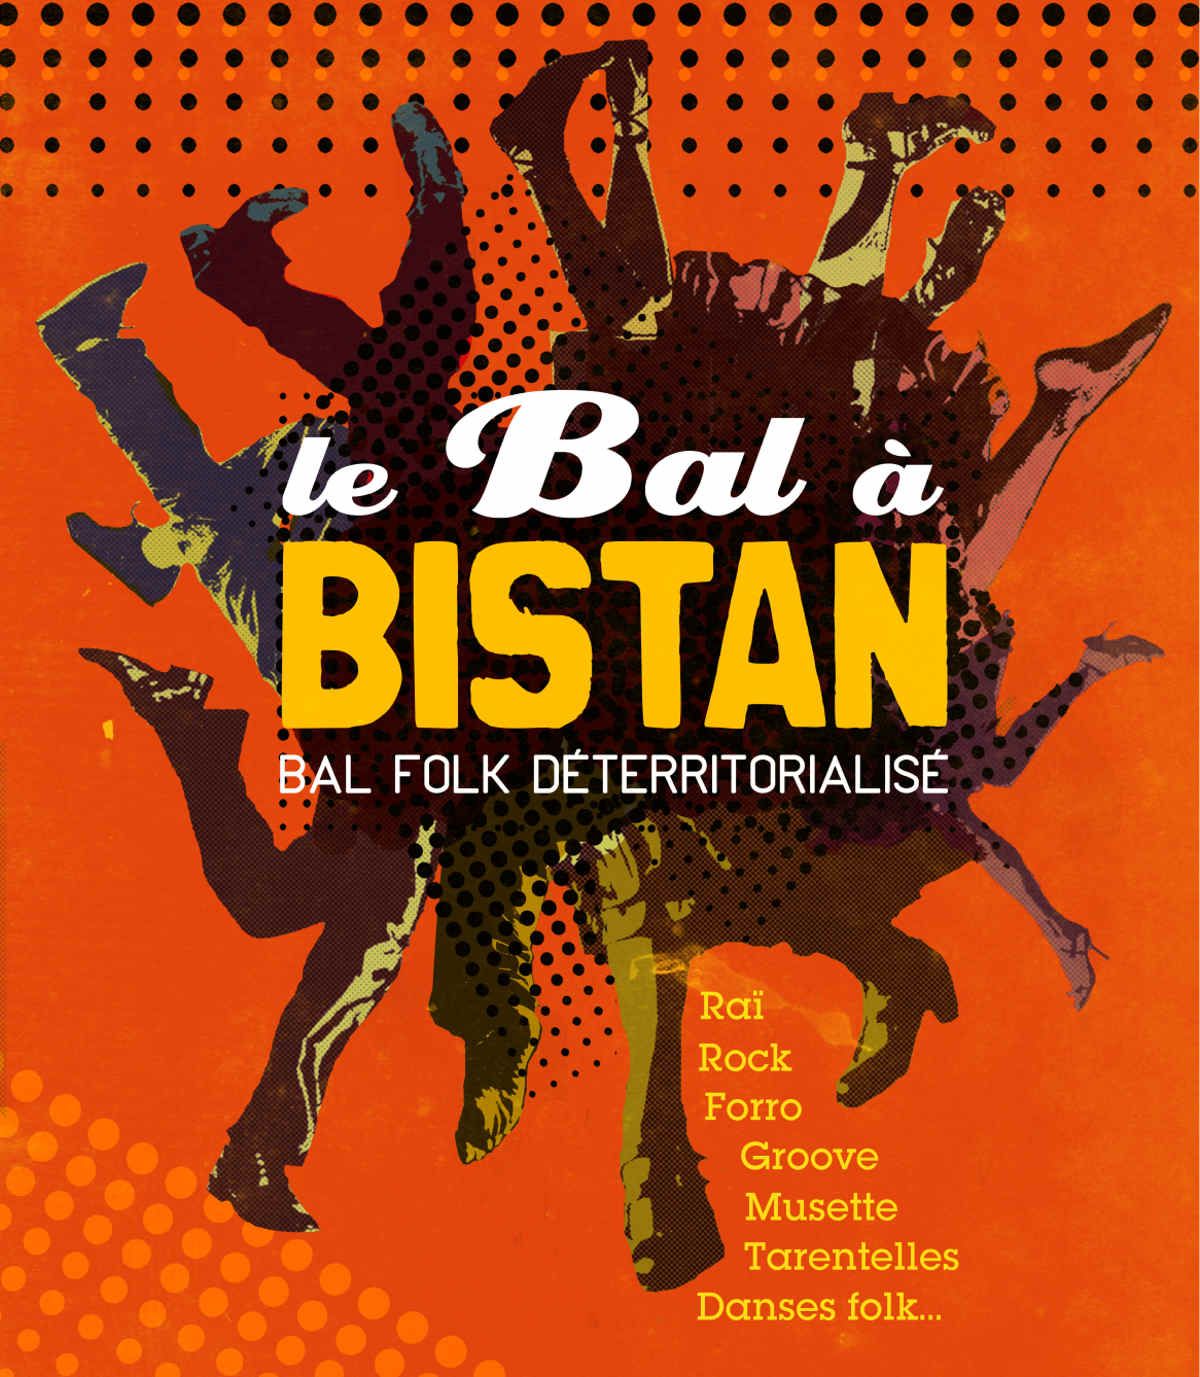 Le bal à Bistan // Bal folk déterritorialisé, Raï, Rock, Forro, Musette, Groove, Tarentelles, Danses Folk, ...